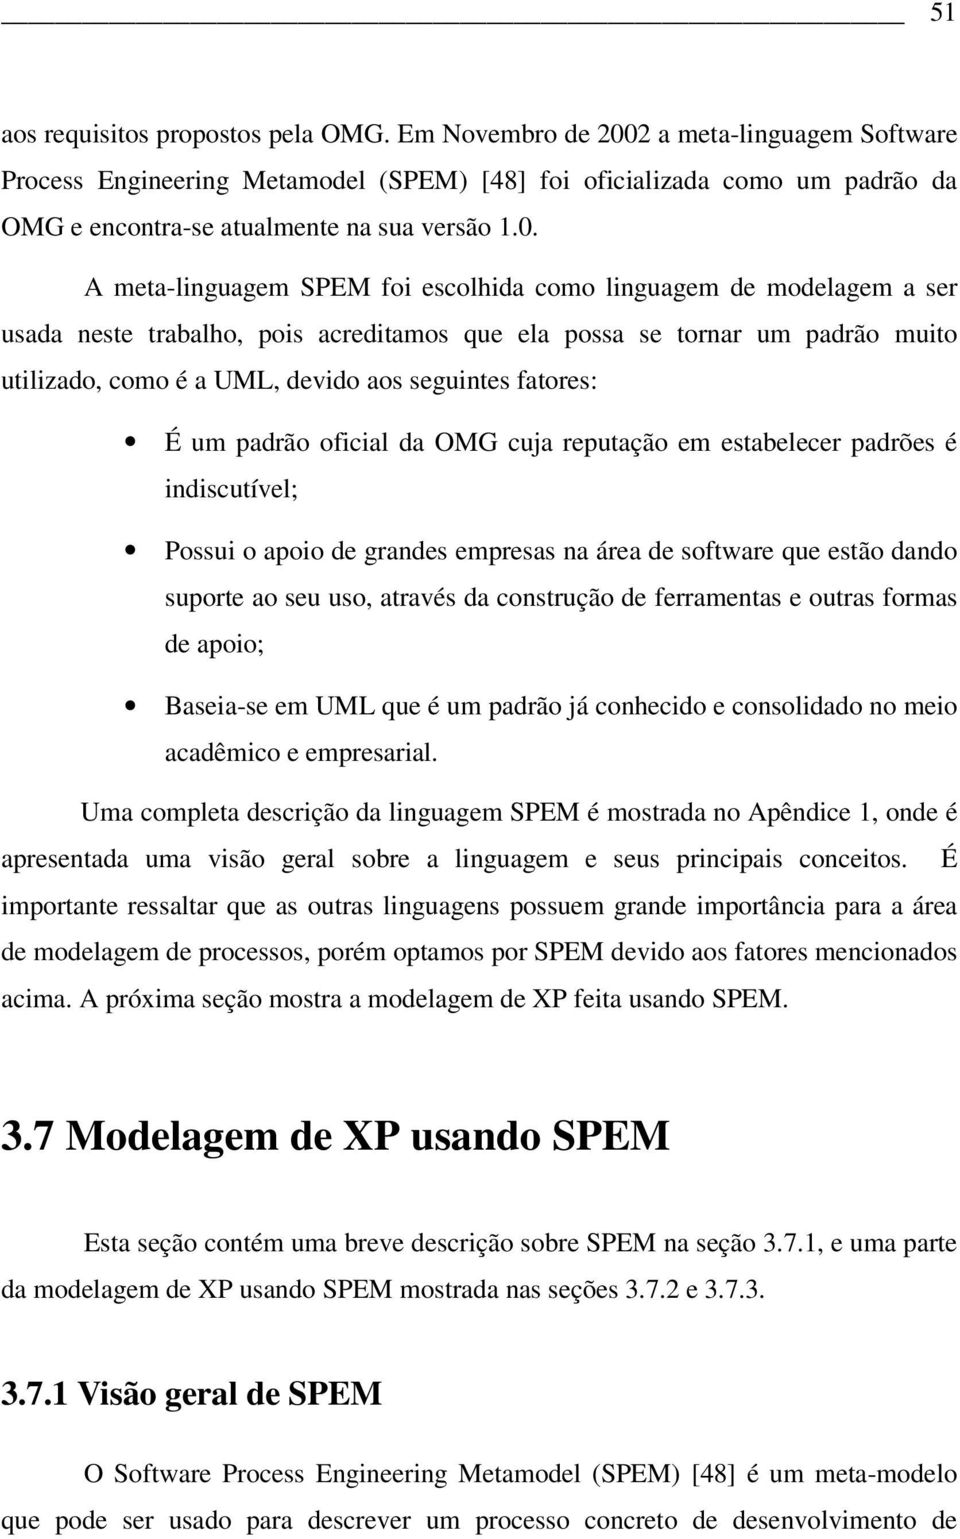 2 a meta-linguagem Software Process Engineering Metamodel (SPEM) [48] foi oficializada como um padrão da OMG e encontra-se atualmente na sua versão 1.0.